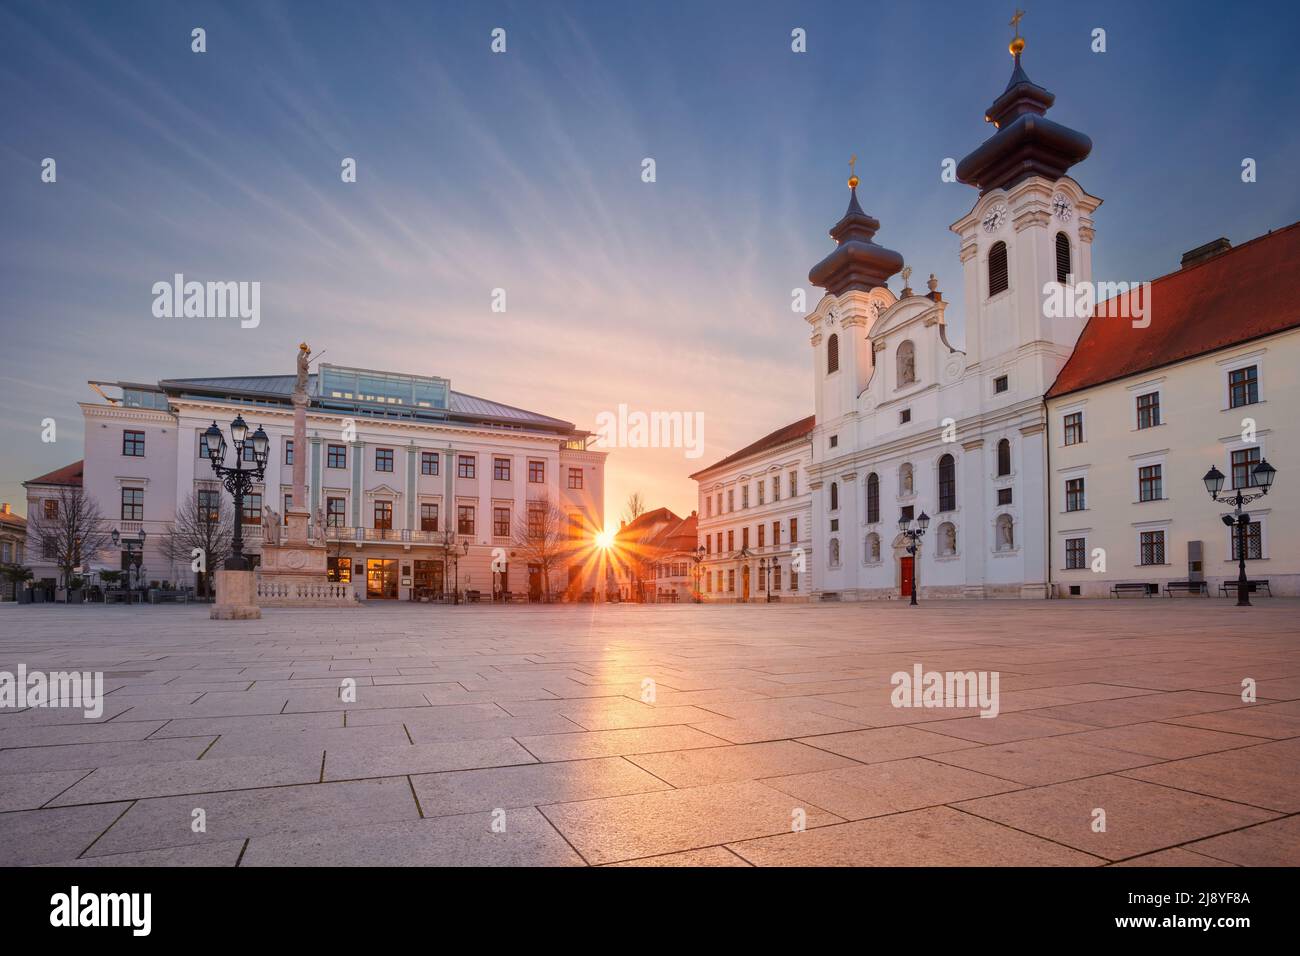 Gyor, Ungheria. Immagine del paesaggio urbano del centro di Gyor, Ungheria con Piazza Szechenyi all'alba. Foto Stock